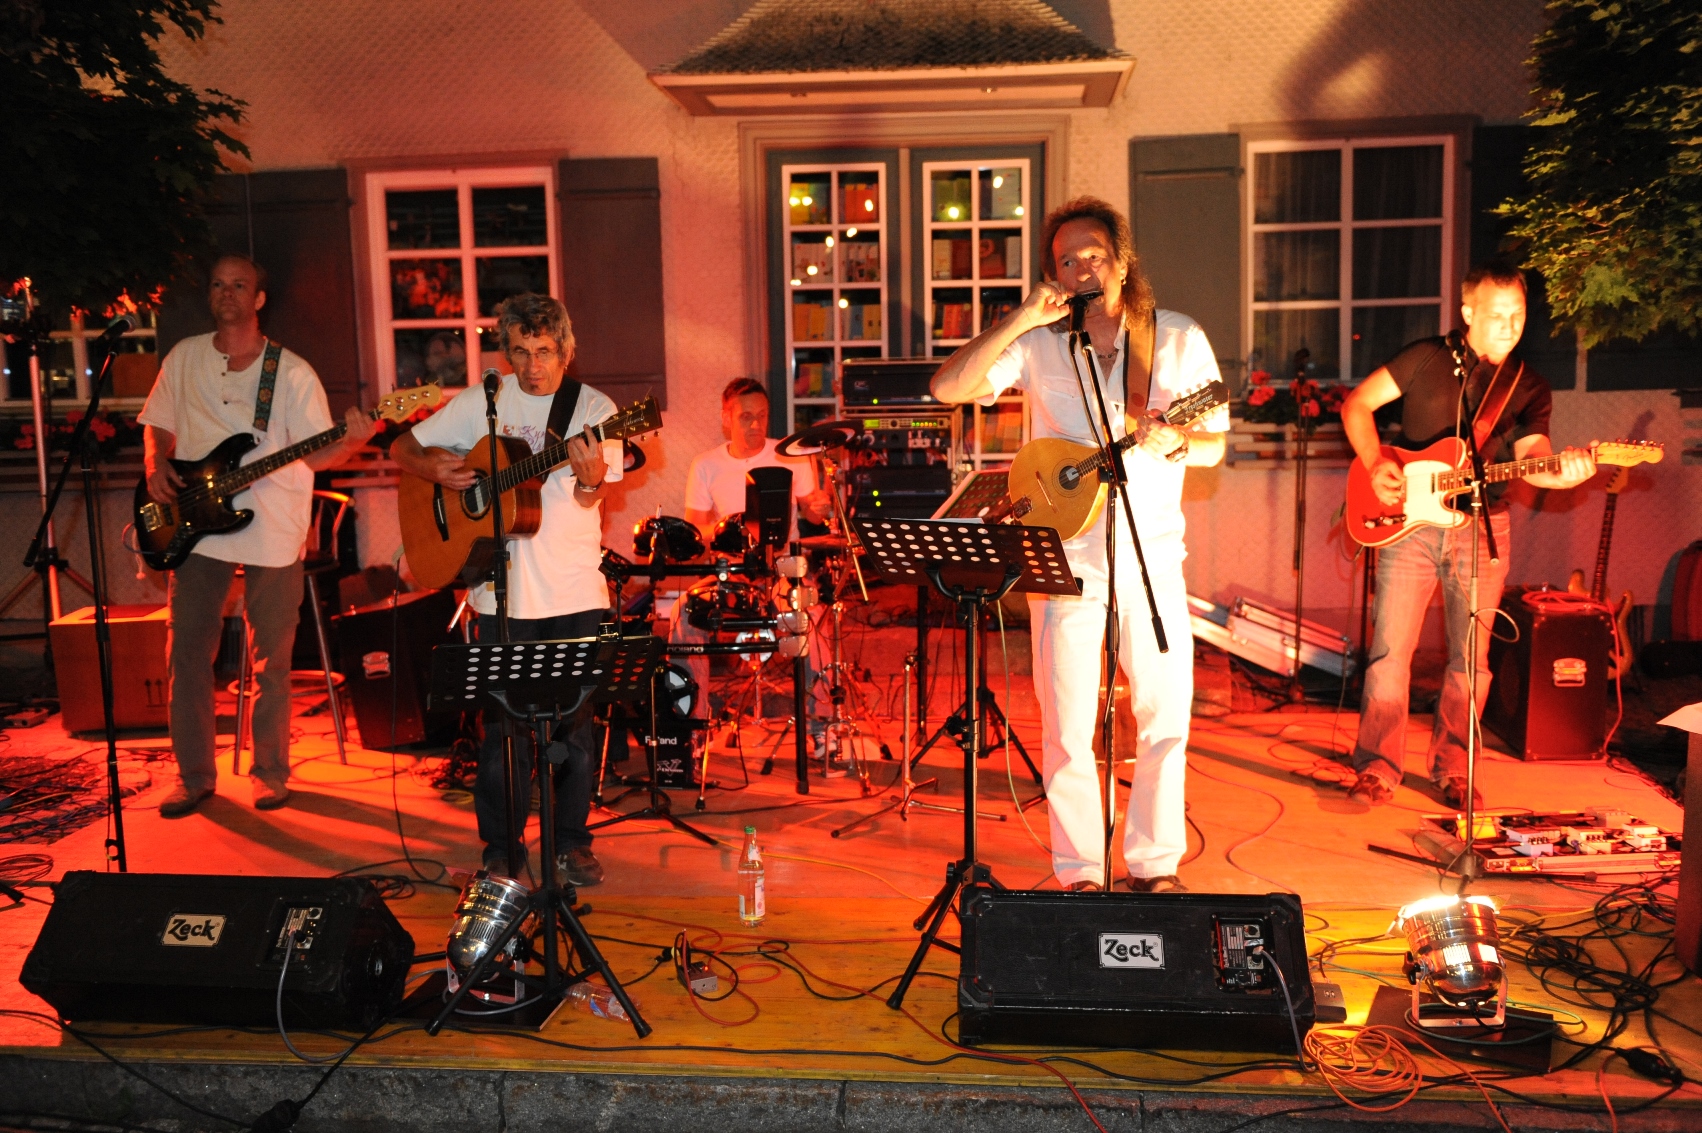  Band spielt auf einer Bühne und wird mit rotem Licht beleuchtet - das Bild wird mit Klick vergrößert 